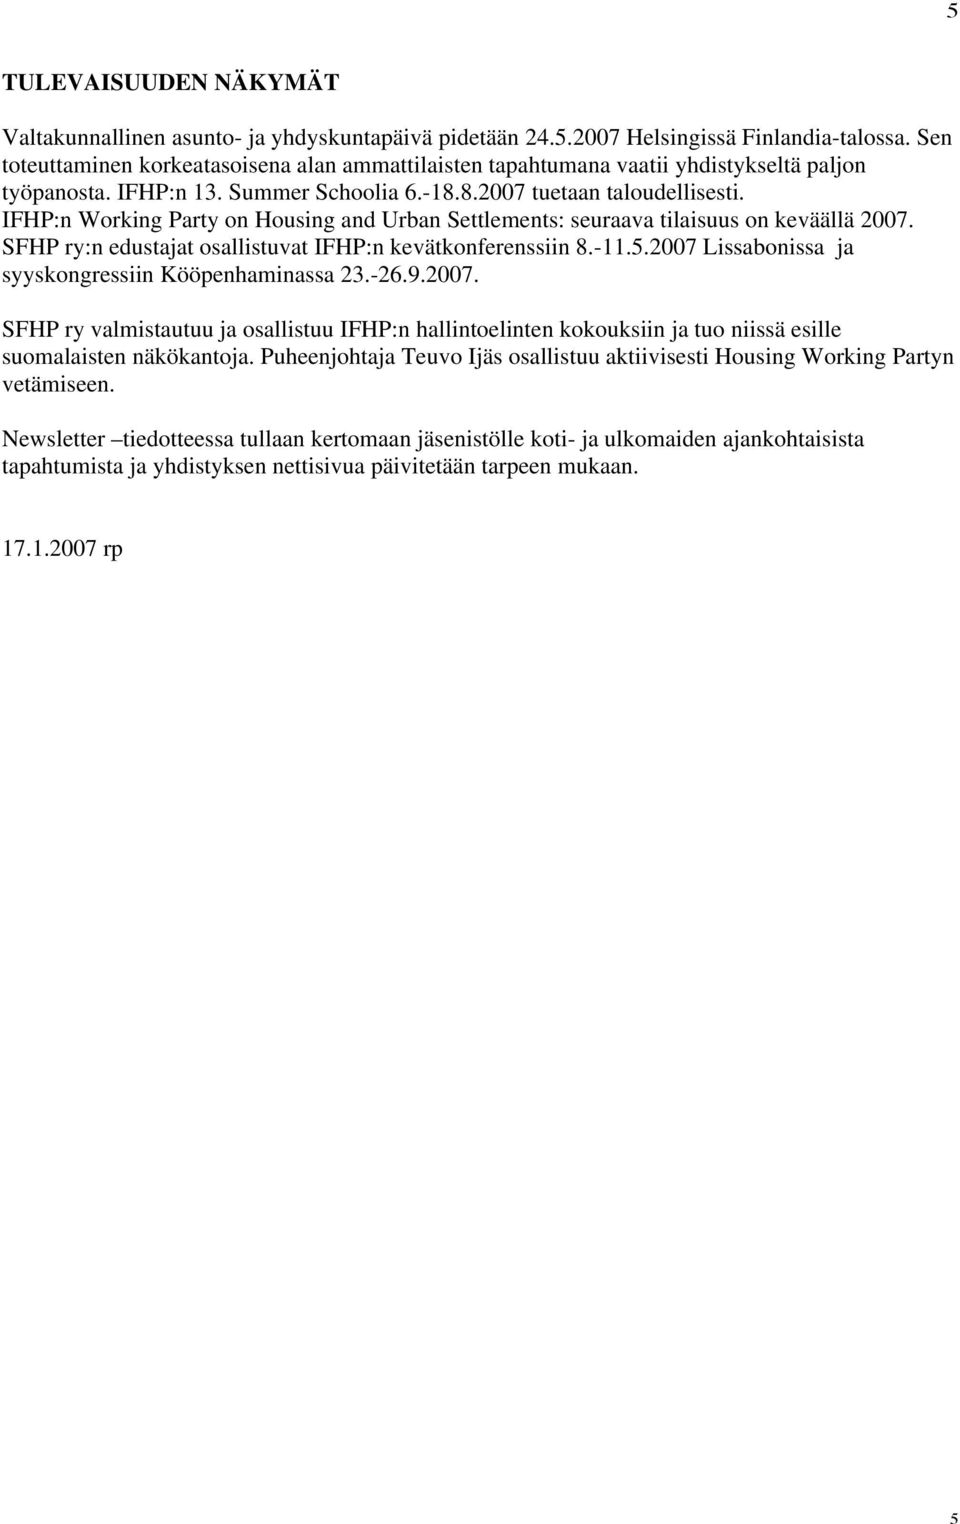 IFHP:n Working Party on Housing and Urban Settlements: seuraava tilaisuus on keväällä 2007. SFHP ry:n edustajat osallistuvat IFHP:n kevätkonferenssiin 8.-11.5.